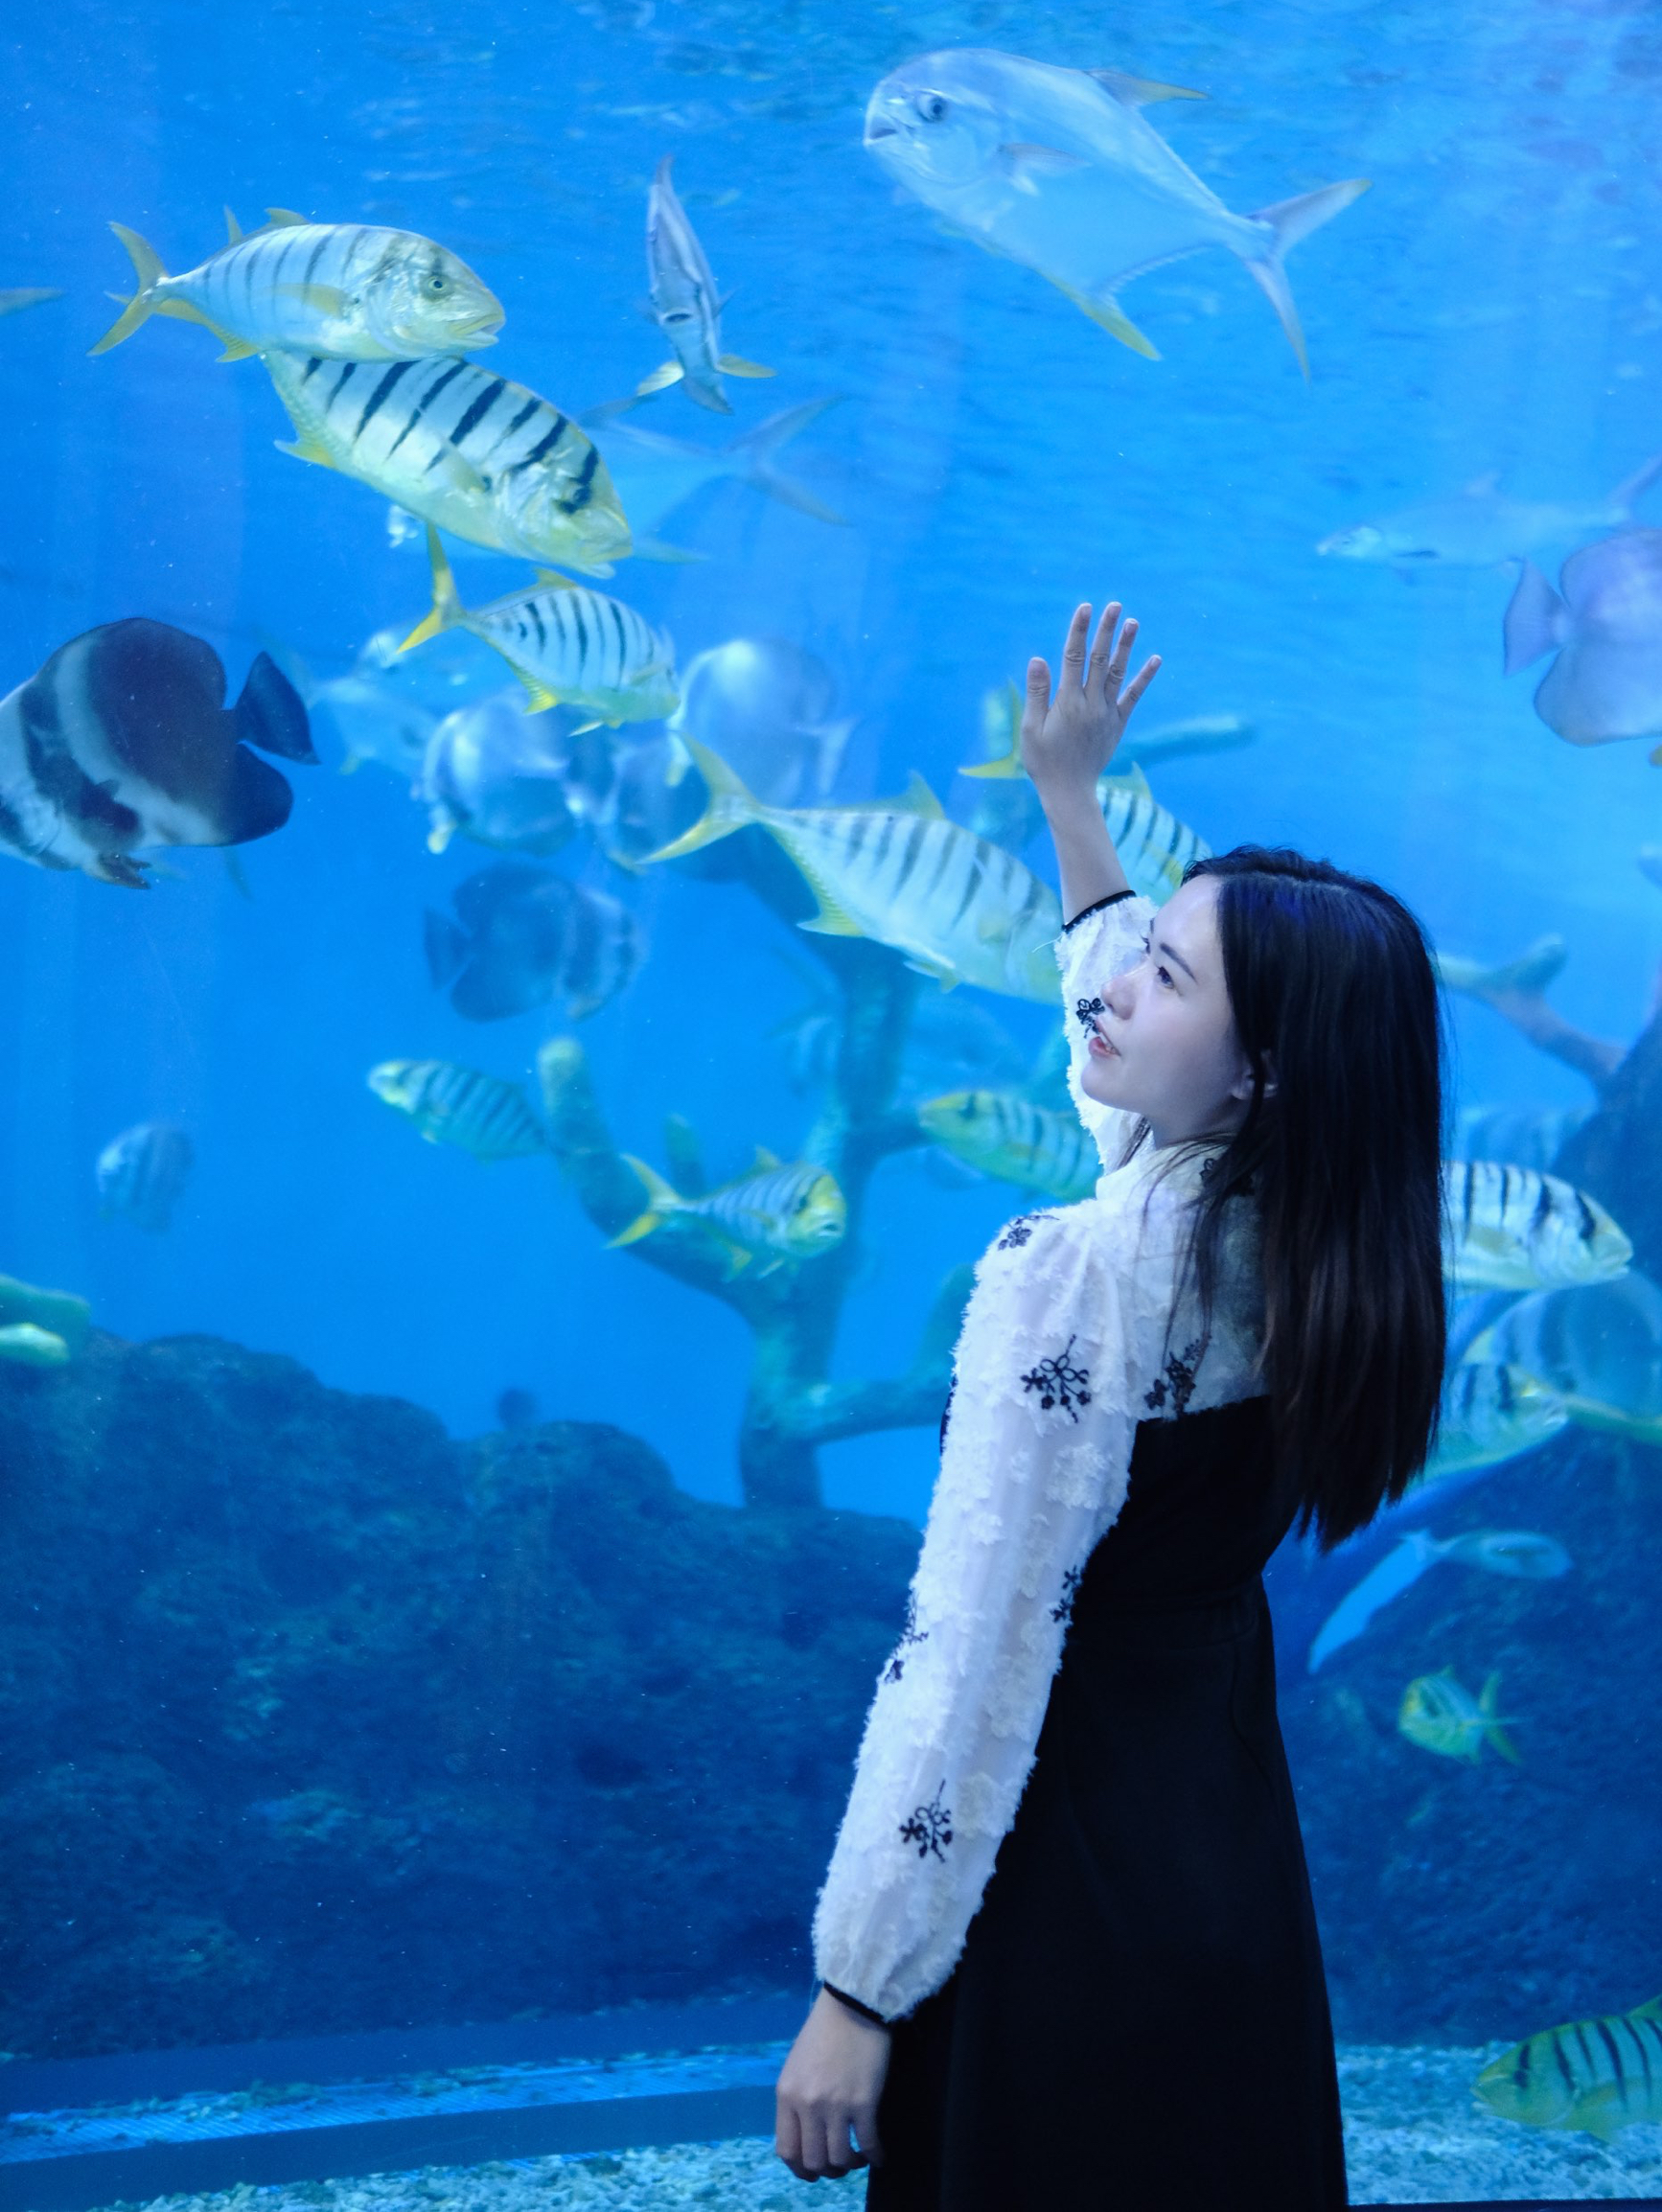 快跟我一起感受海洋世界的魅力吧 #海洋动物 #游乐园找童年 #国内浪漫旅行地 #寻找宝藏游乐园 #福